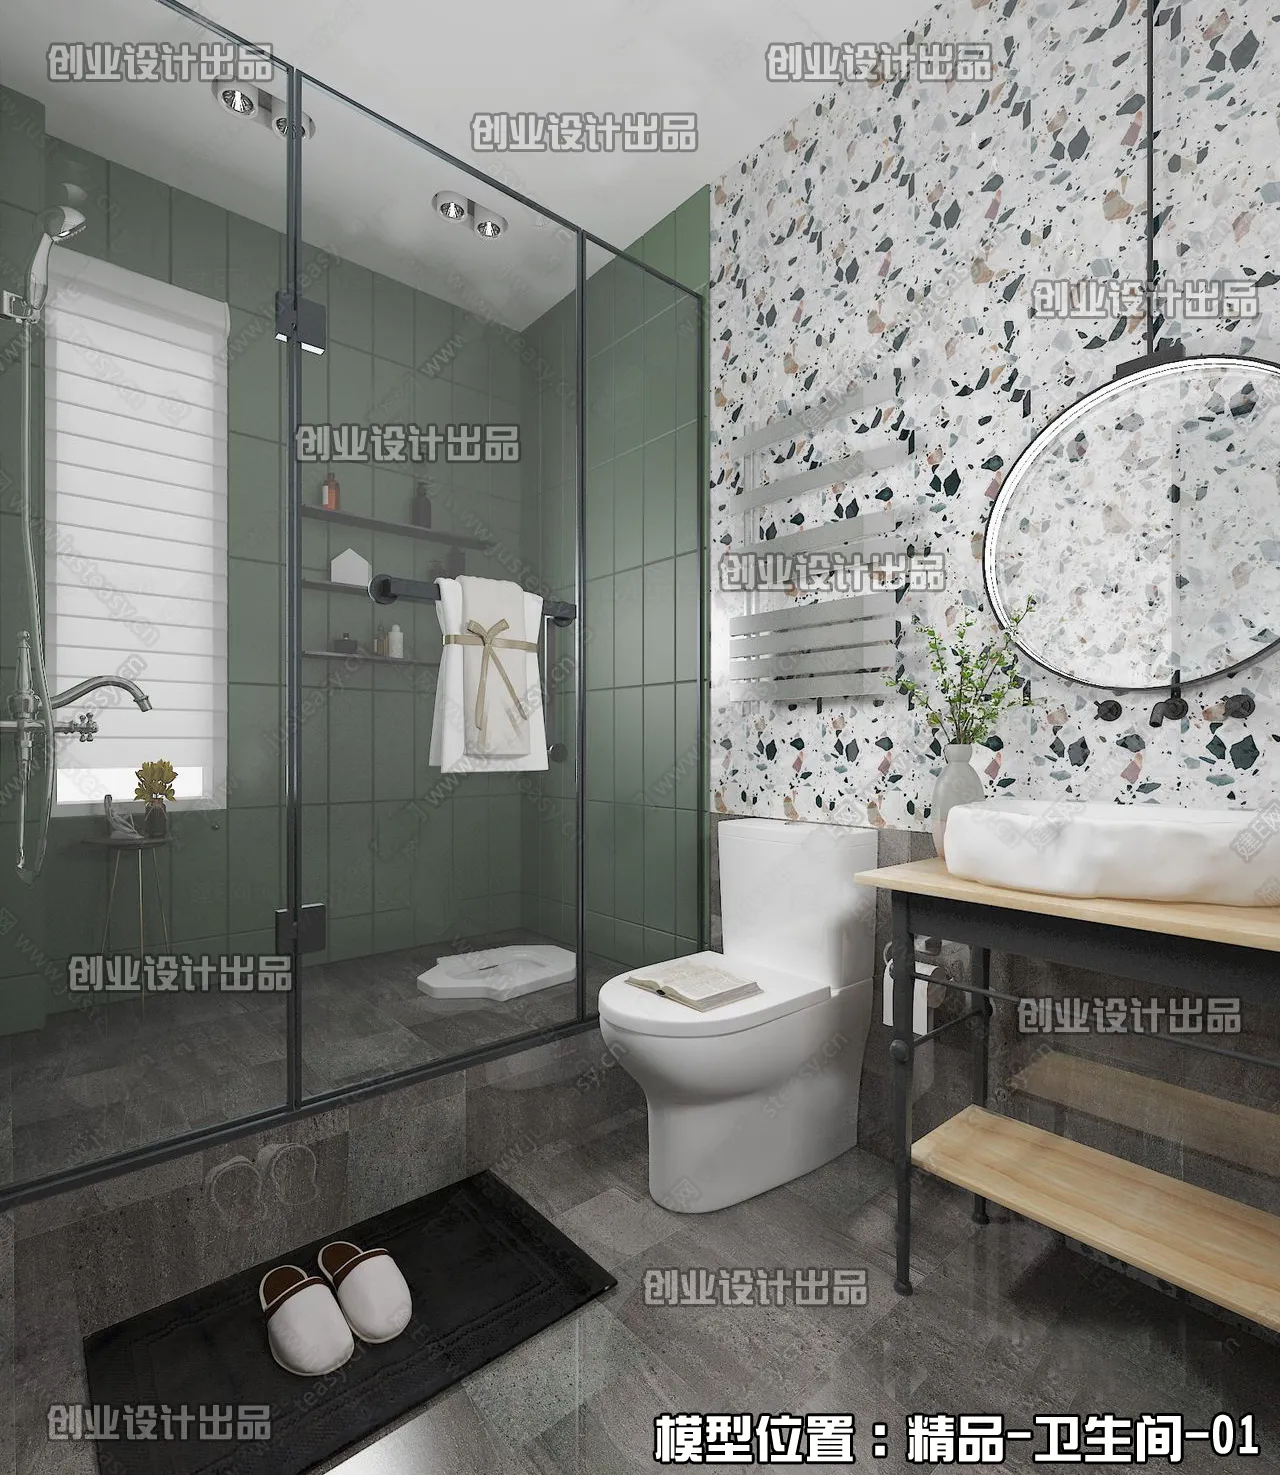 Bathroom – Scandinavian architecture – 021